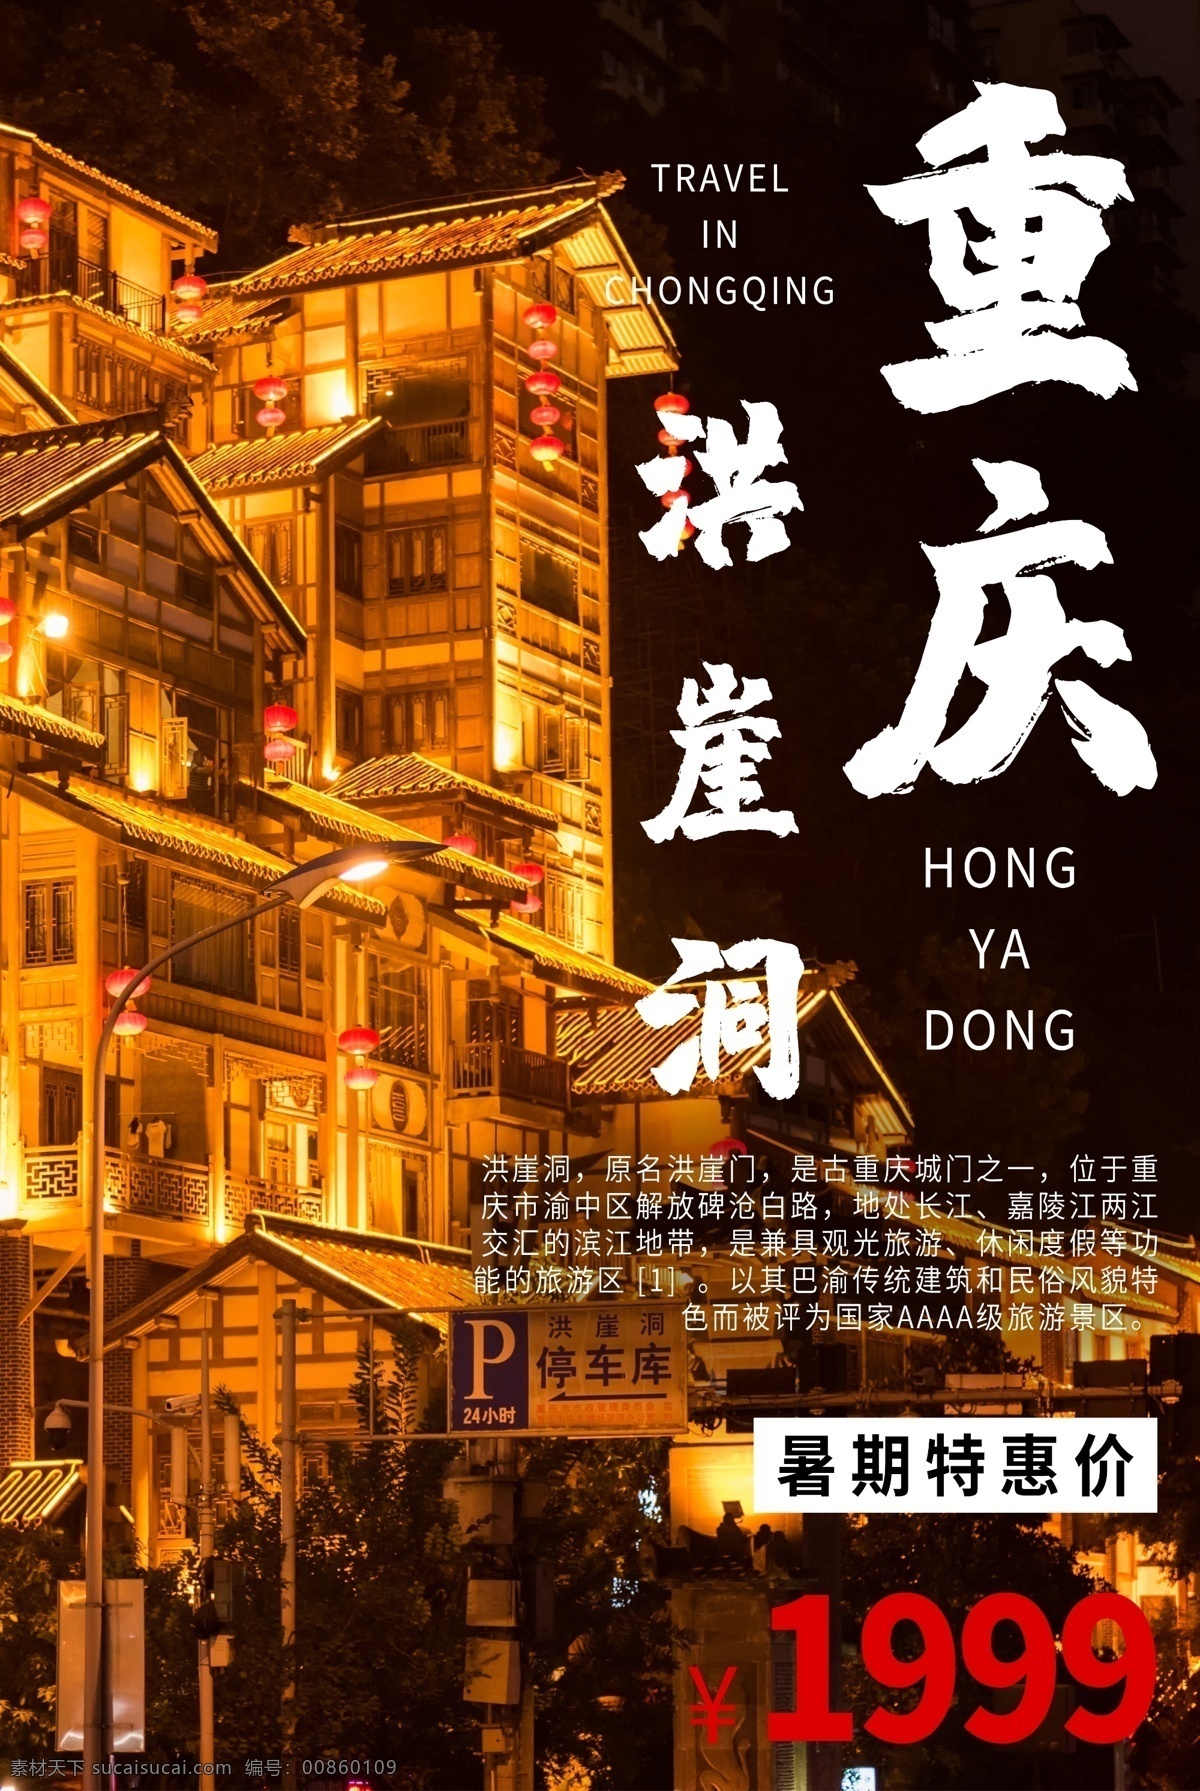 重庆旅游 旅行 活动 宣传海报 素材图片 重庆 旅游 宣传 海报